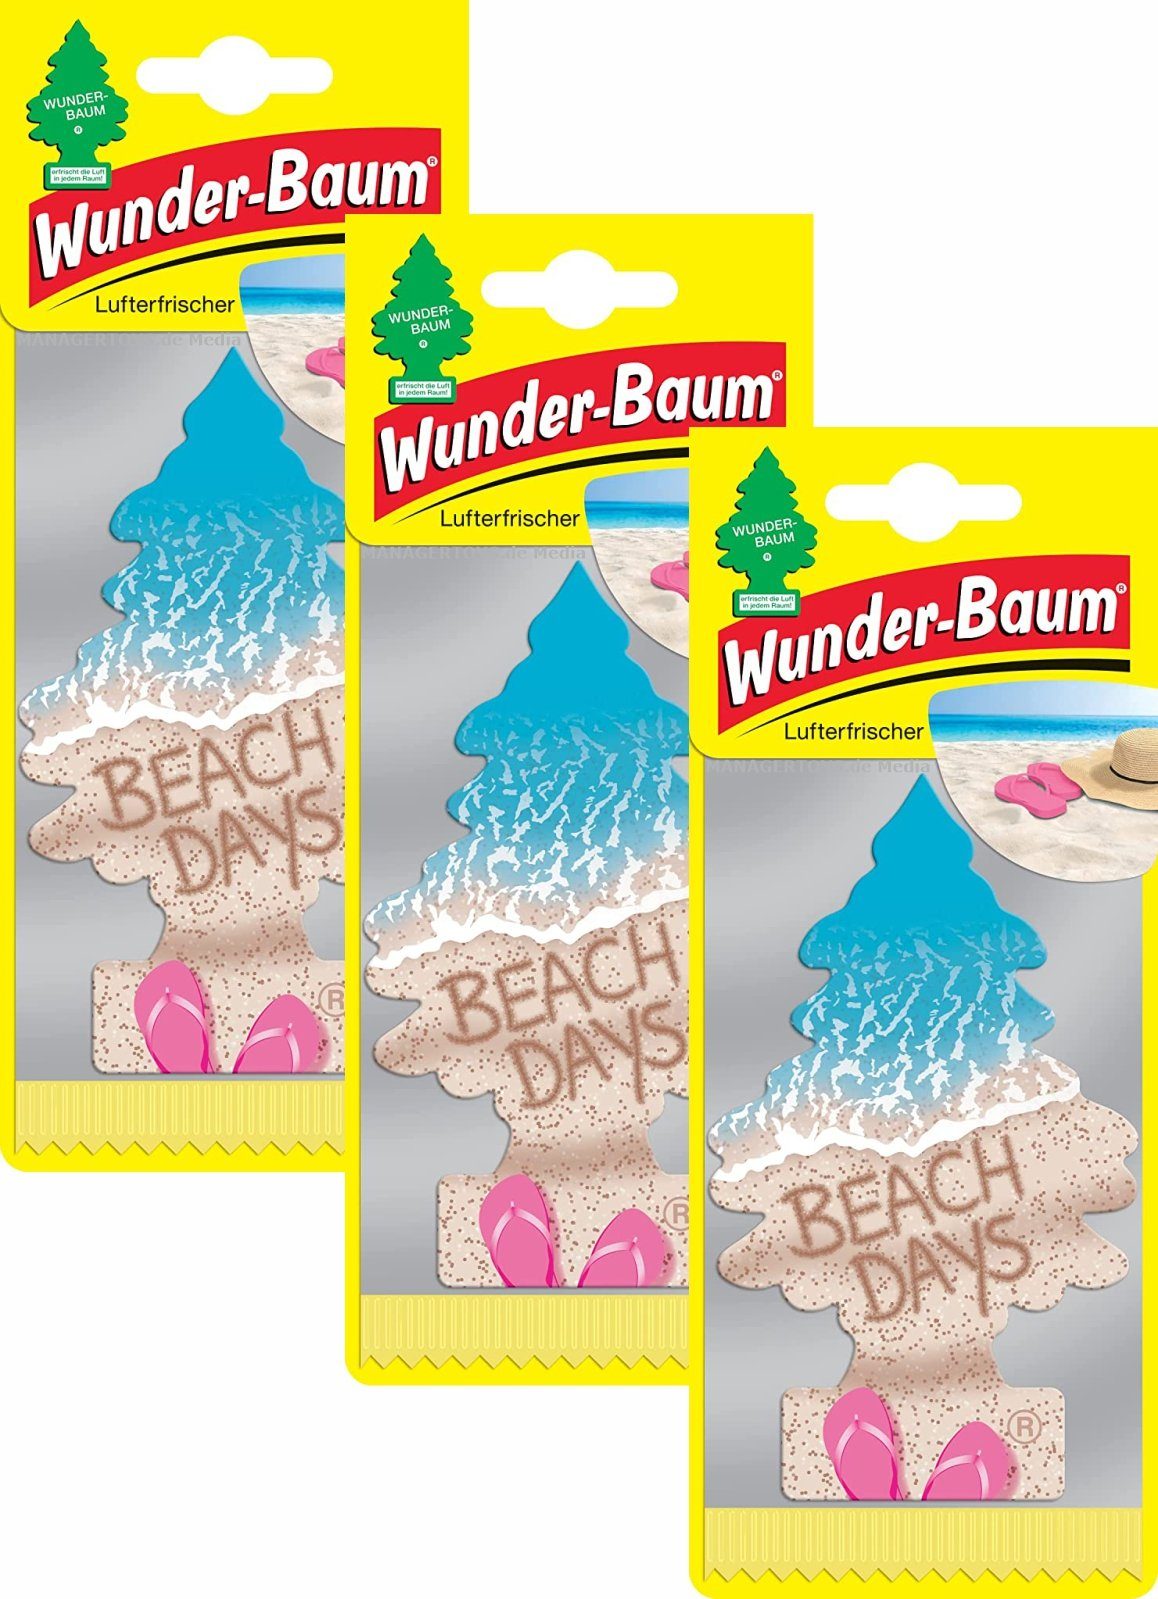 Kunstbaum Beach Days 3er Wunder-Baum Duftbäumchen Lufterfrischer, Wunderbaum 3 Set